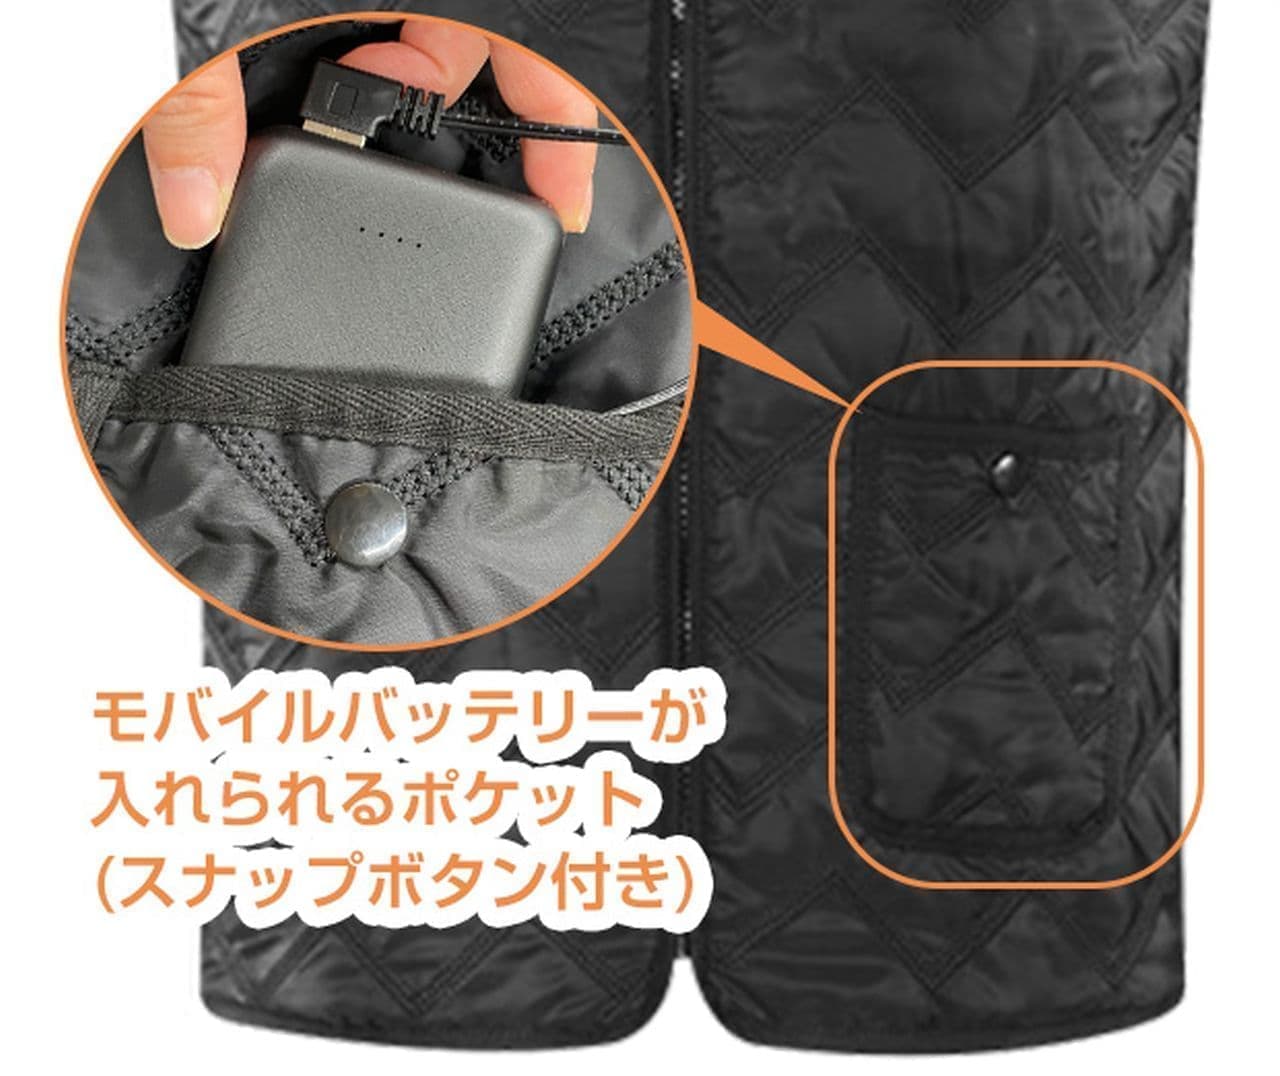 コートの下に着るとなお暖かい モバイルバッテリーで発熱するあったか電熱ベスト